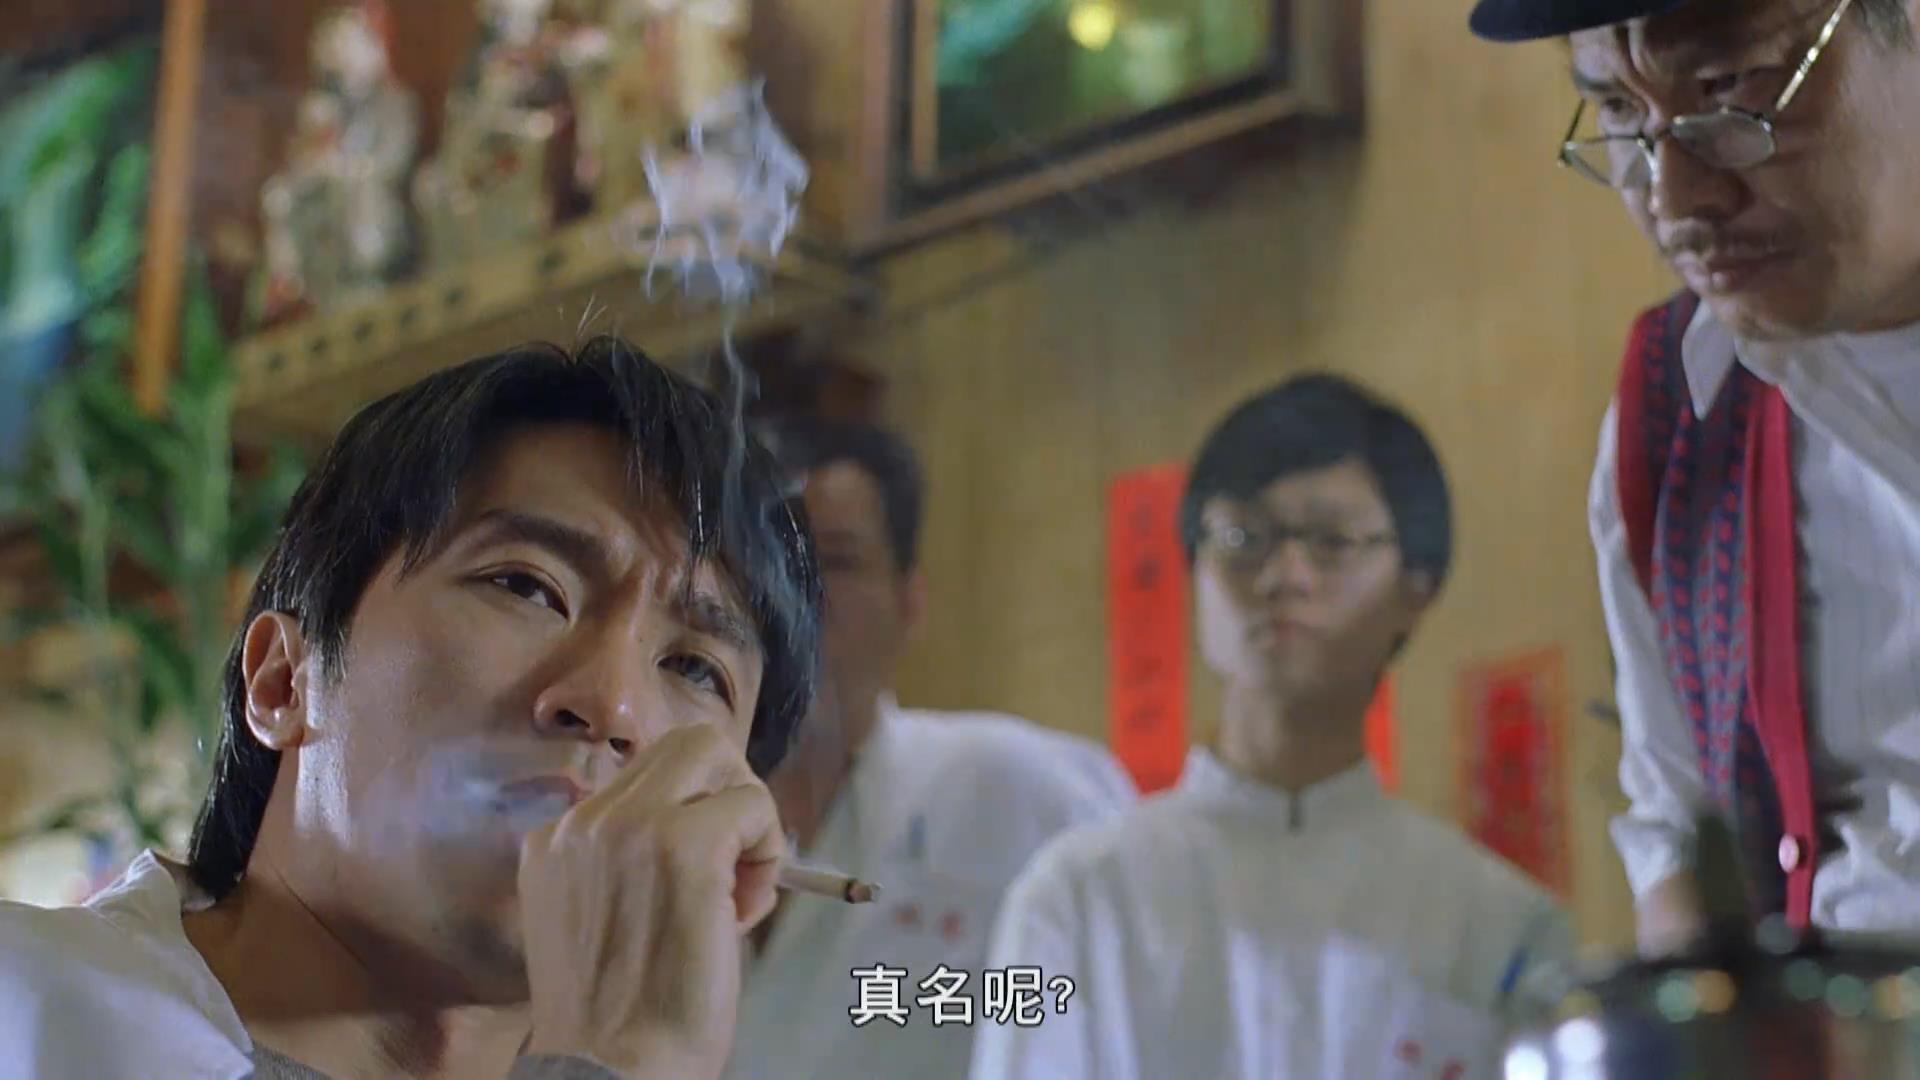 周星驰的经典电影《行运一条龙》场景中的行运茶餐厅,是香港式茶